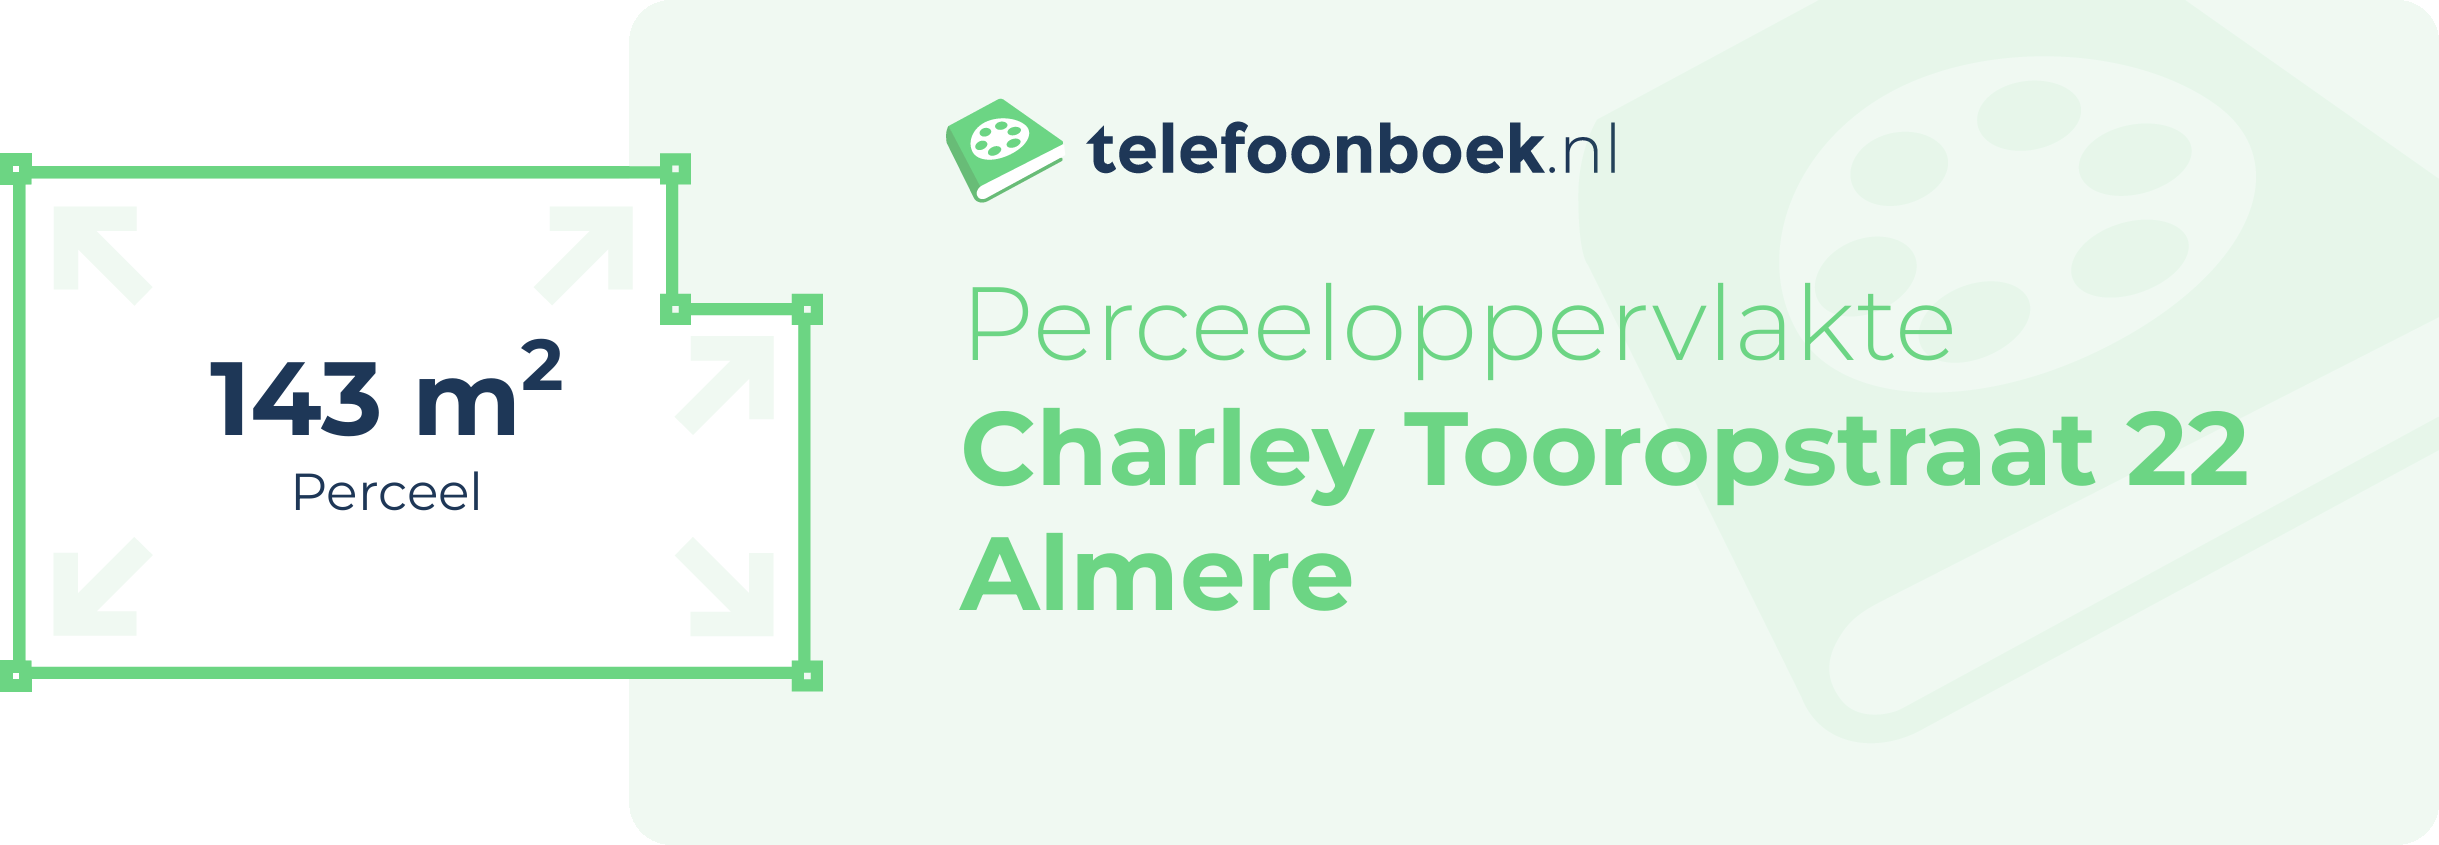 Perceeloppervlakte Charley Tooropstraat 22 Almere